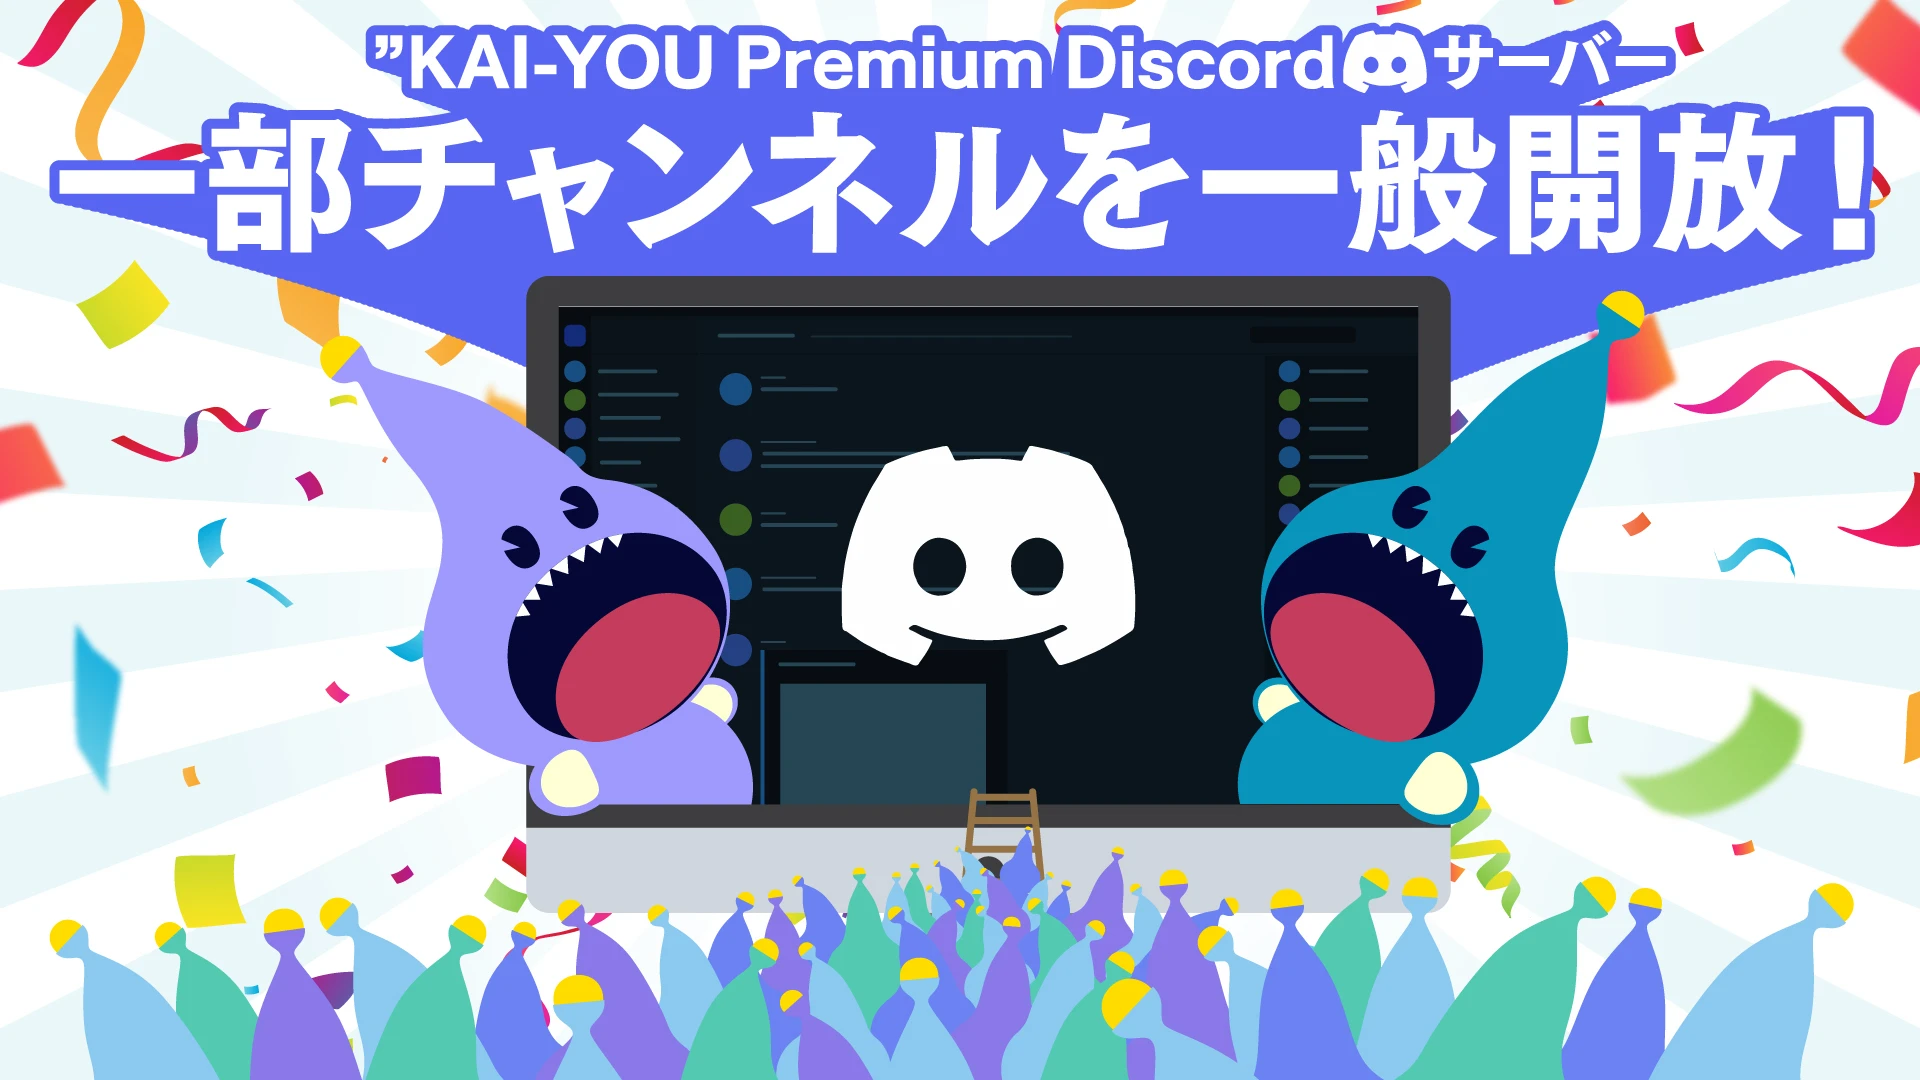 KAI-YOU Premium会員様向けのコミュニティ「KAI-YOU Discord」の一部チャンネルを一般開放します